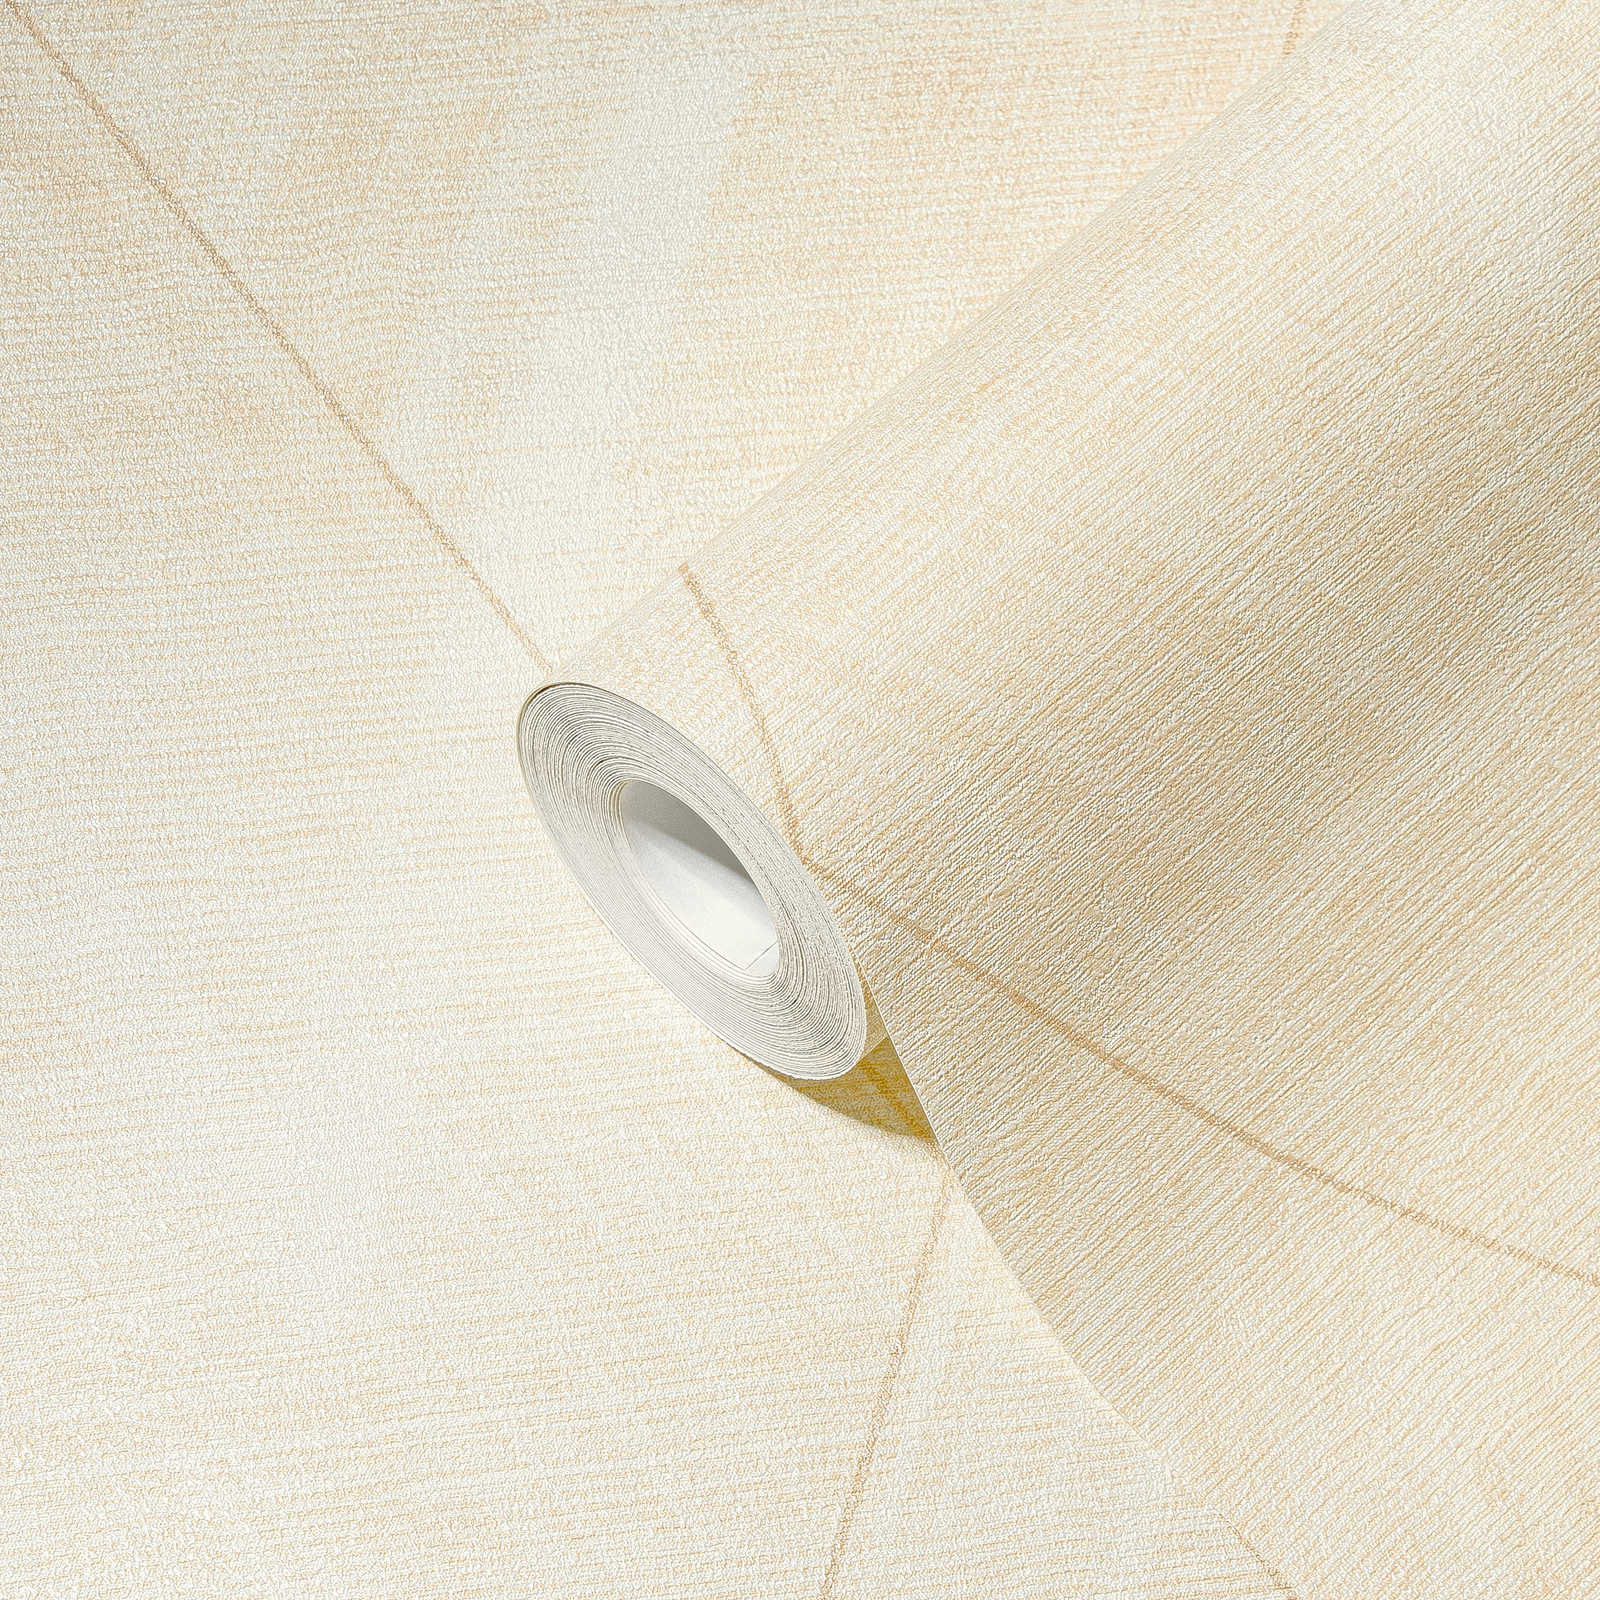             Papier peint losange aspect textile - métallique, crème, jaune
        